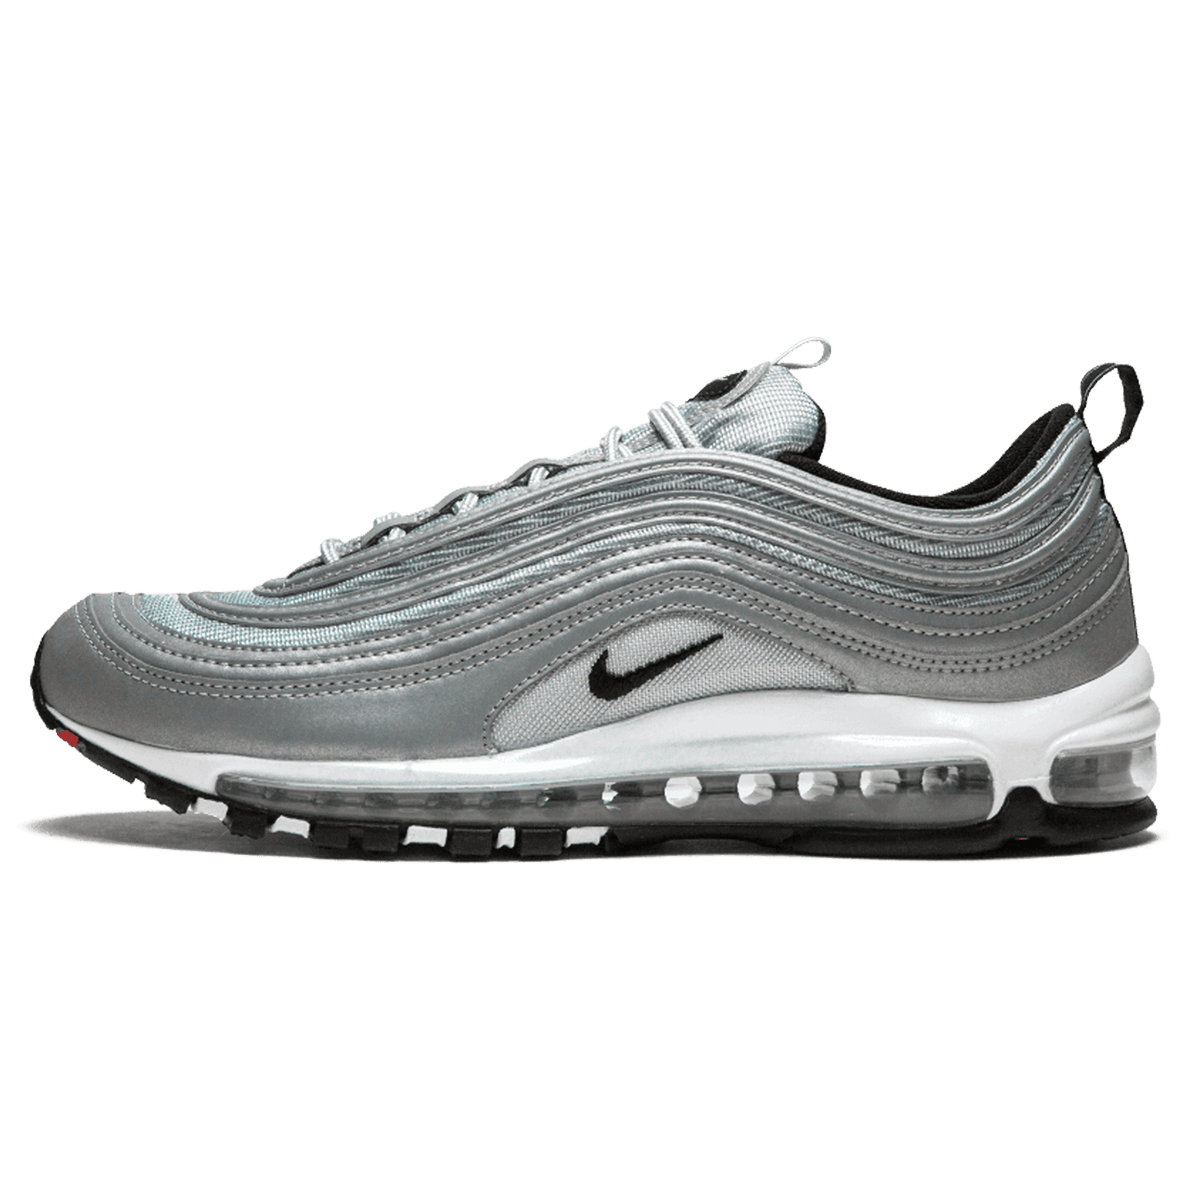 Nike Air Max 97 'Reflect Silver' - Kick Game